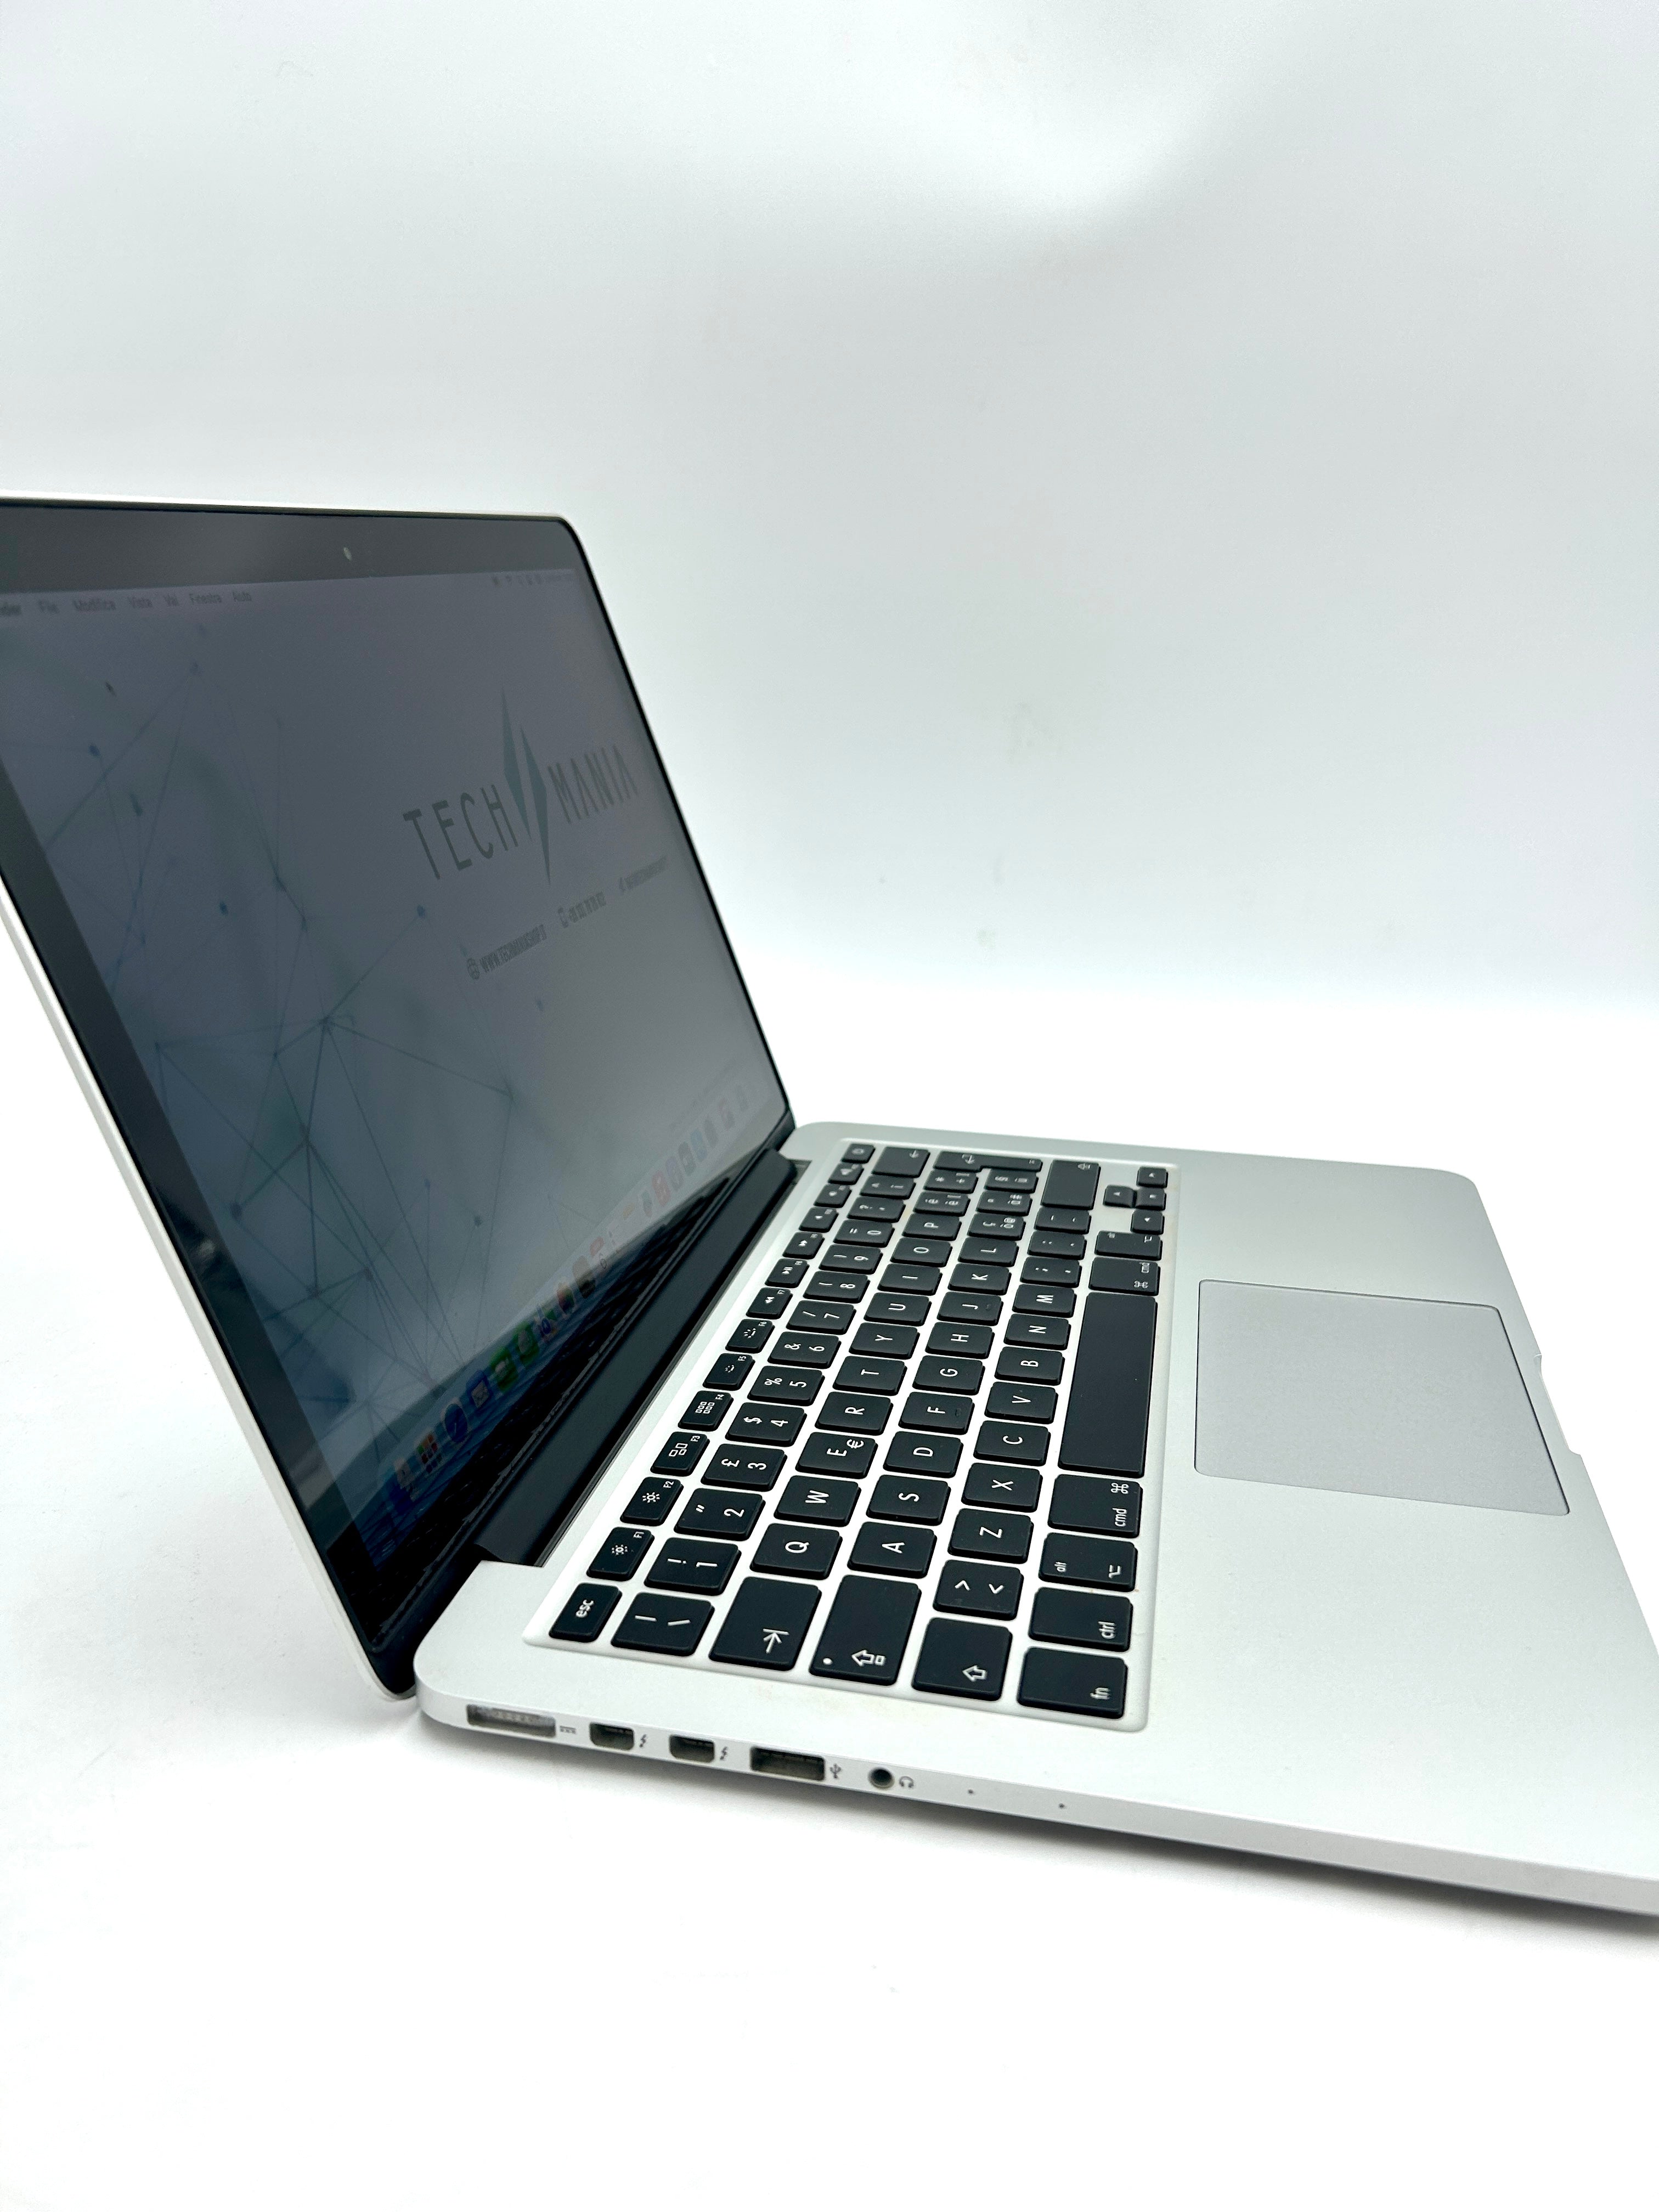 Macbook Pro 13 2015 i5 8gb Ram 128gb Ssd